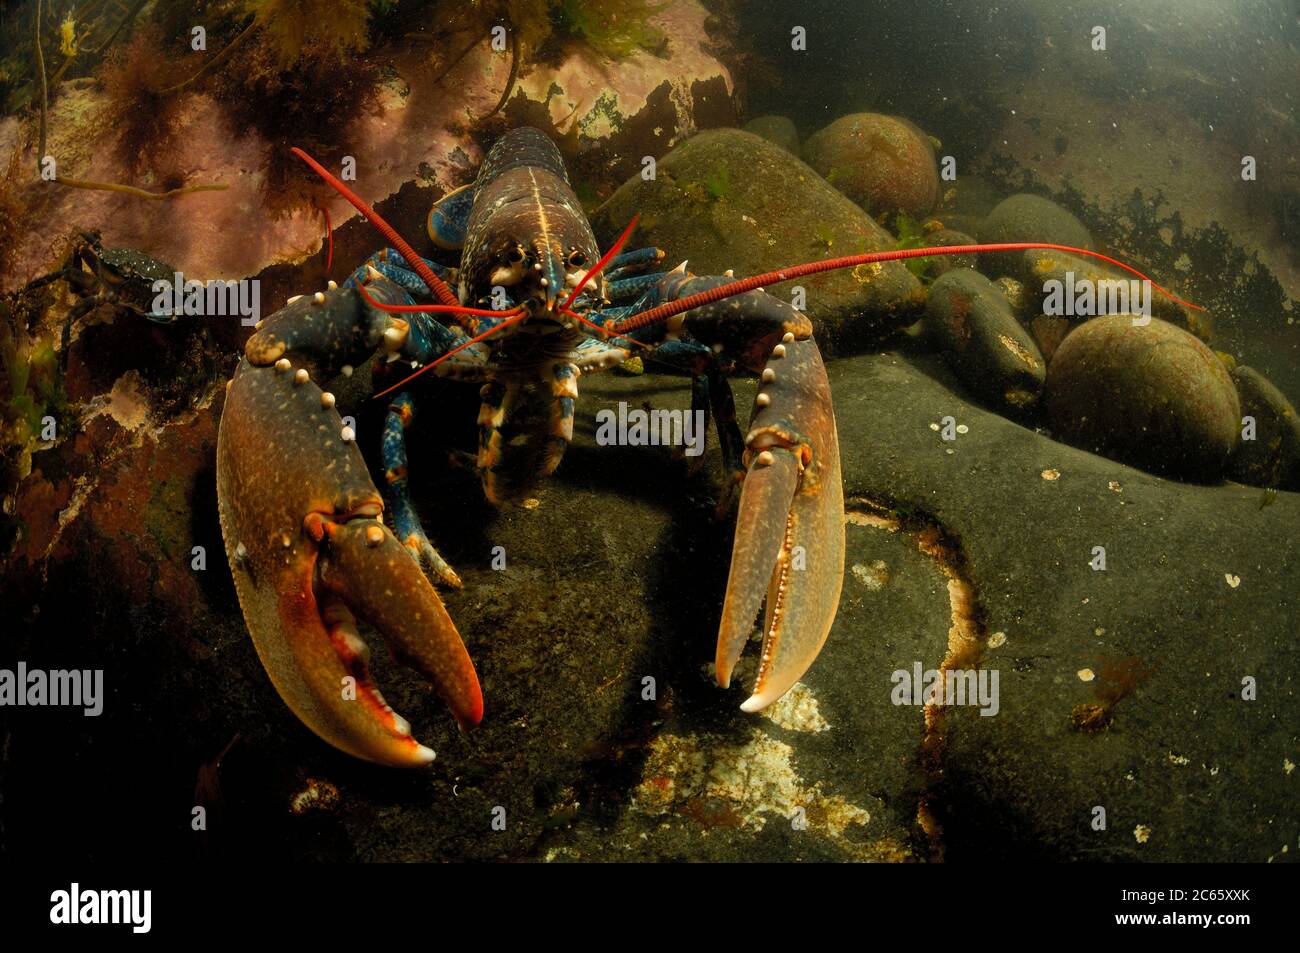 Homard commun, homard à la mâchoire européenne, homard du Maine (Homarus gammarus) (dt. Hummer, Europäischer Hummer) Crustacea Banque D'Images